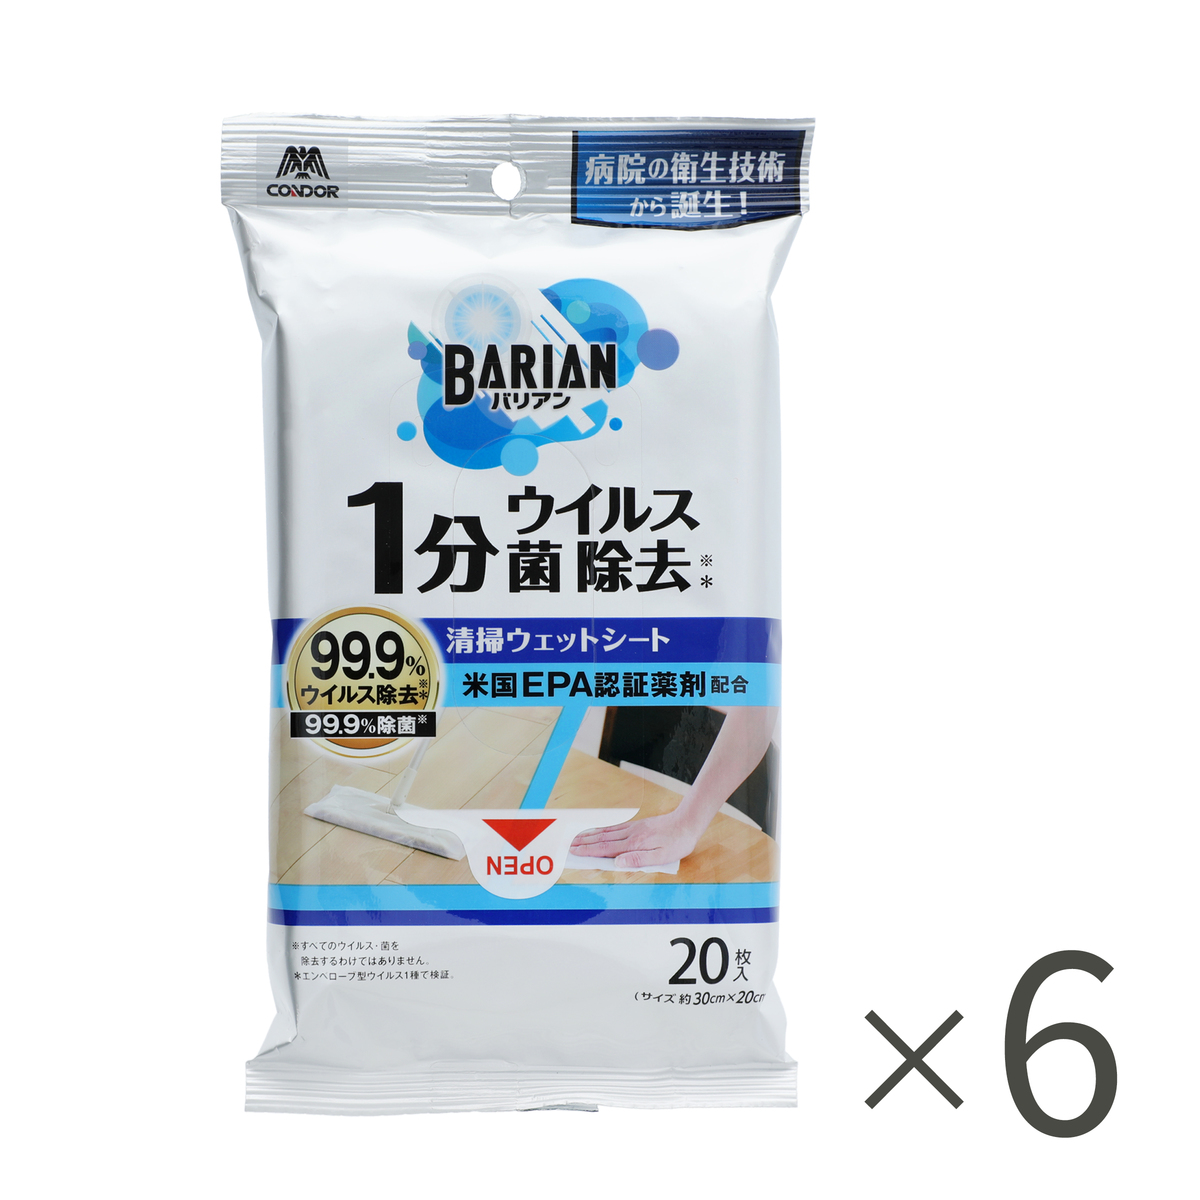 ＜QVCジャパン＞ BARIAN1分でウィルス菌除去シート6パックセット